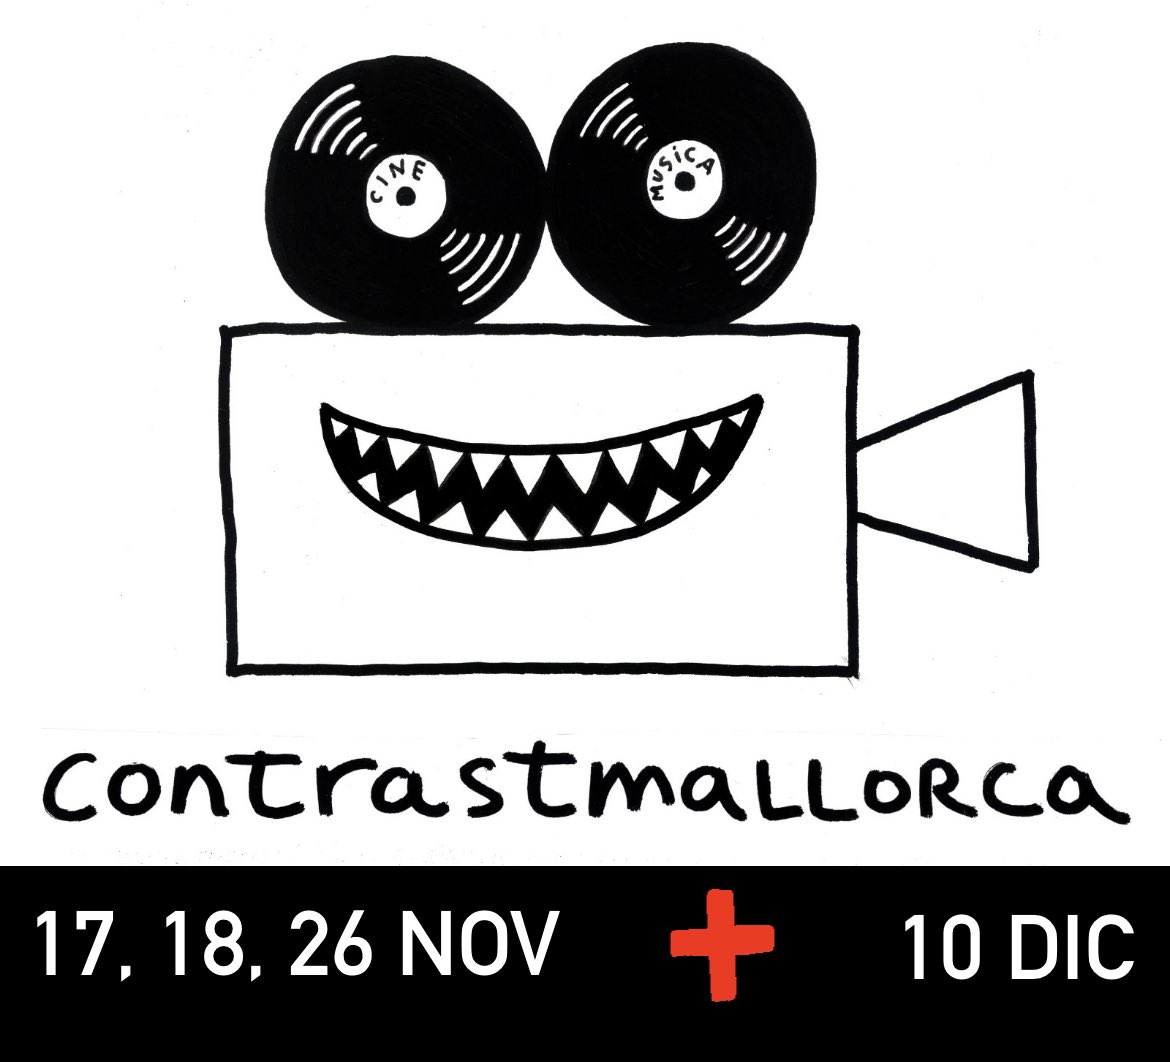 🤘🏽🤘🏽🤘🏽🤘🏽🤘🏽🤘🏽 
#Mallorca #ContrastMallorca